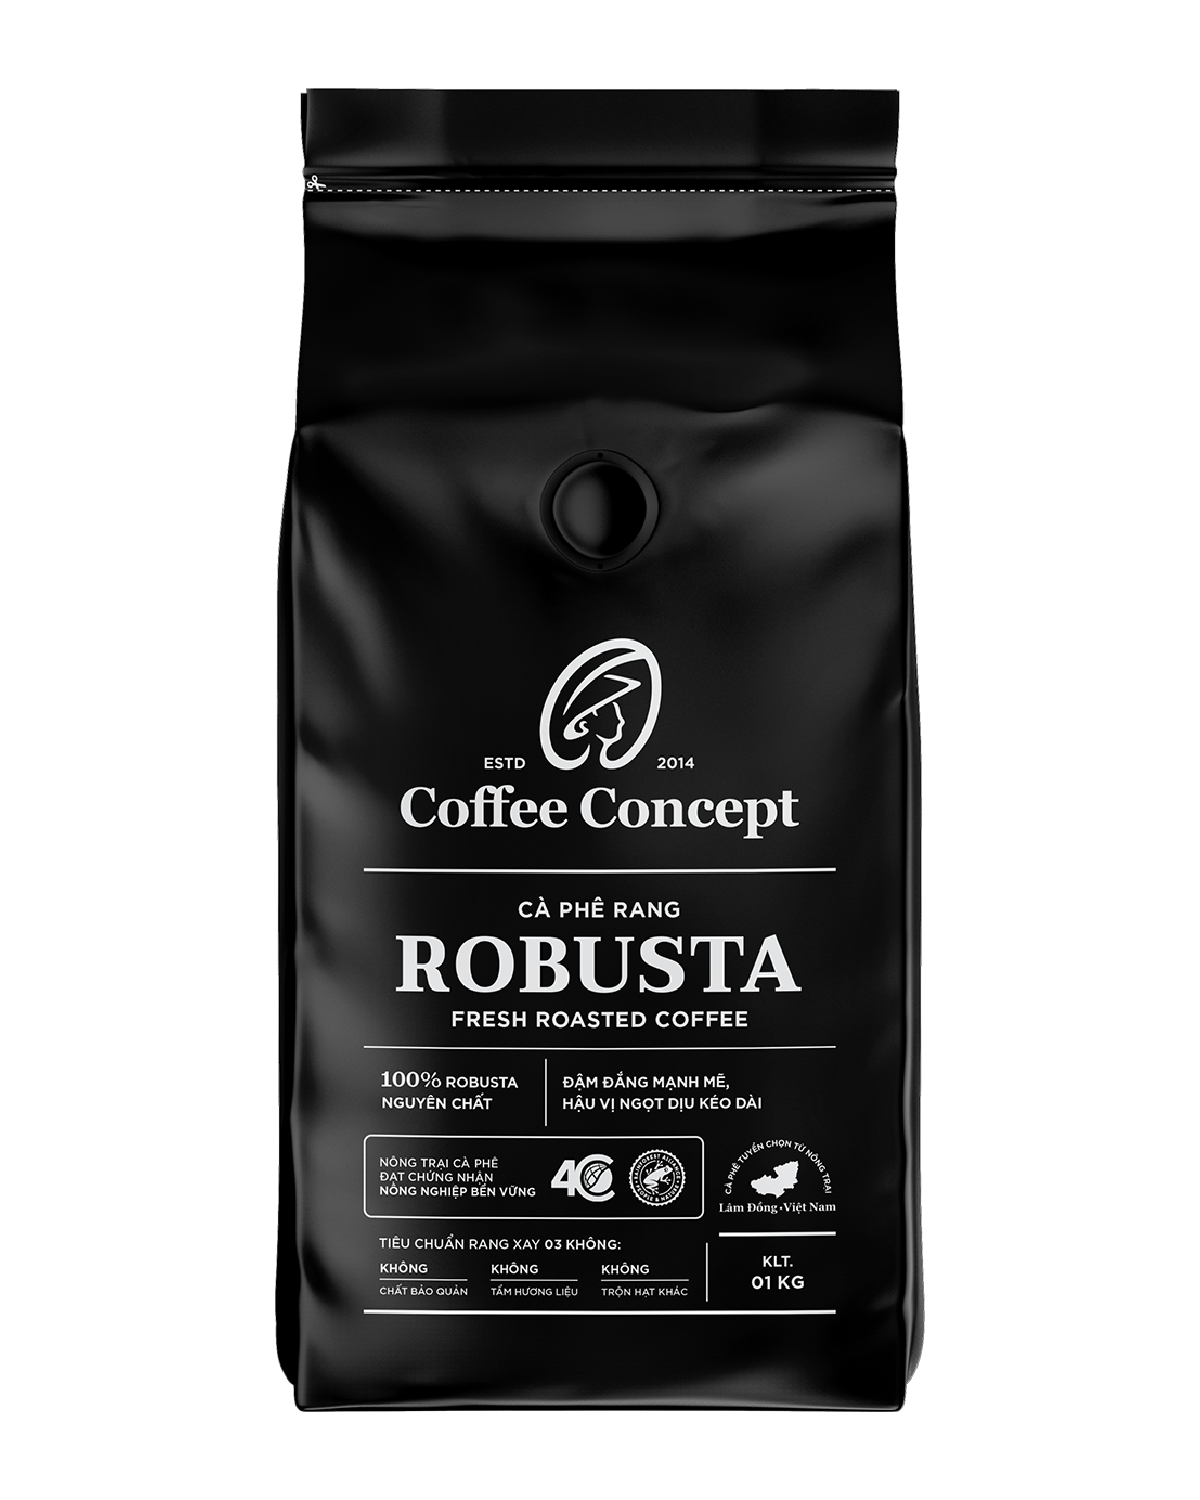  Cà phê rang ROBUSTA gói 1000G (dùng cho kinh doanh) - Thùng 12 gói 